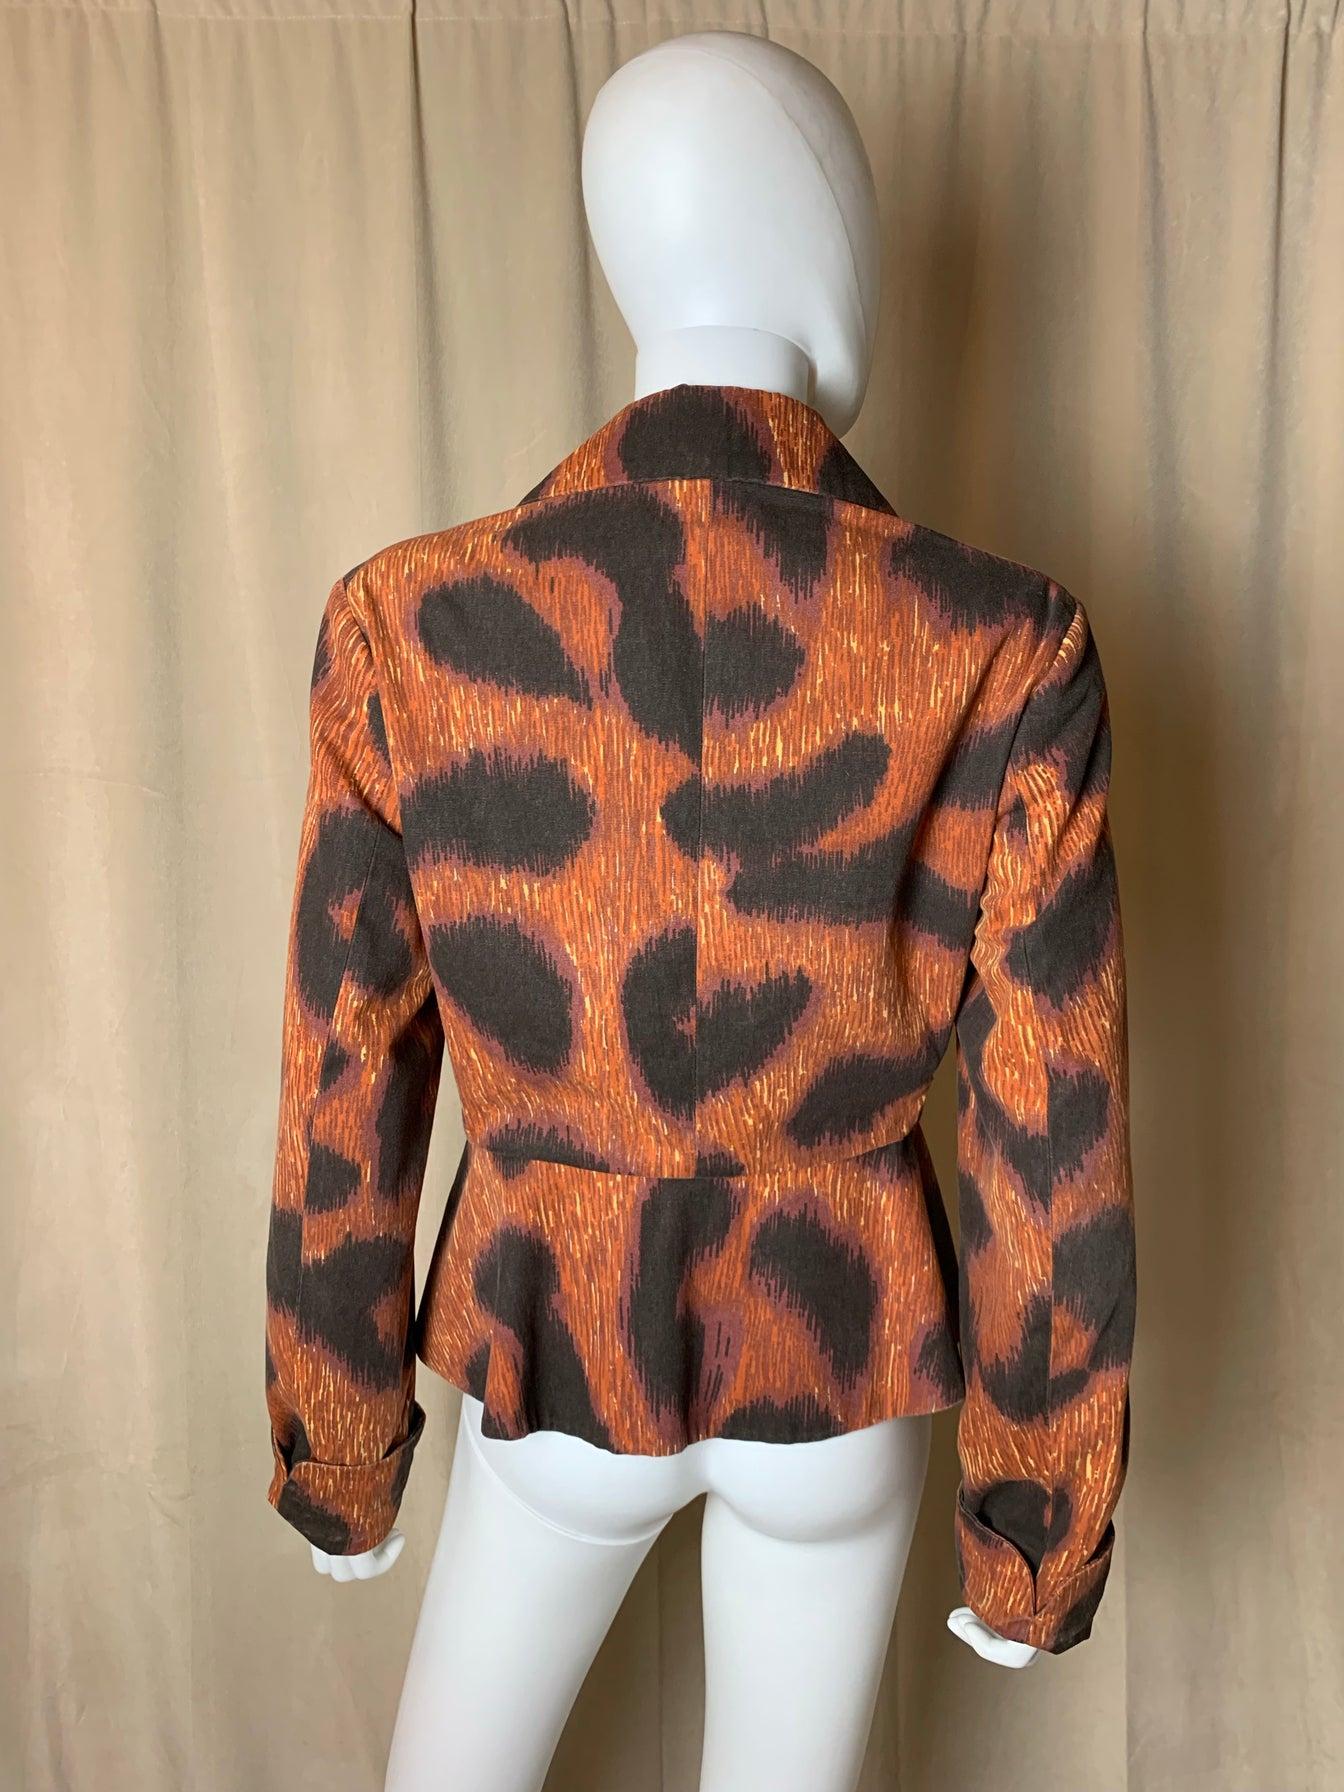 Cette magnifique veste en léopard provient de l'un des défilés les plus emblématiques de Vivienne Westwood. Elle a eu lieu en octobre 1993, pour la collection automne/hiver 1994. L'imprimé léopard était le thème du défilé, tout comme le tapis du